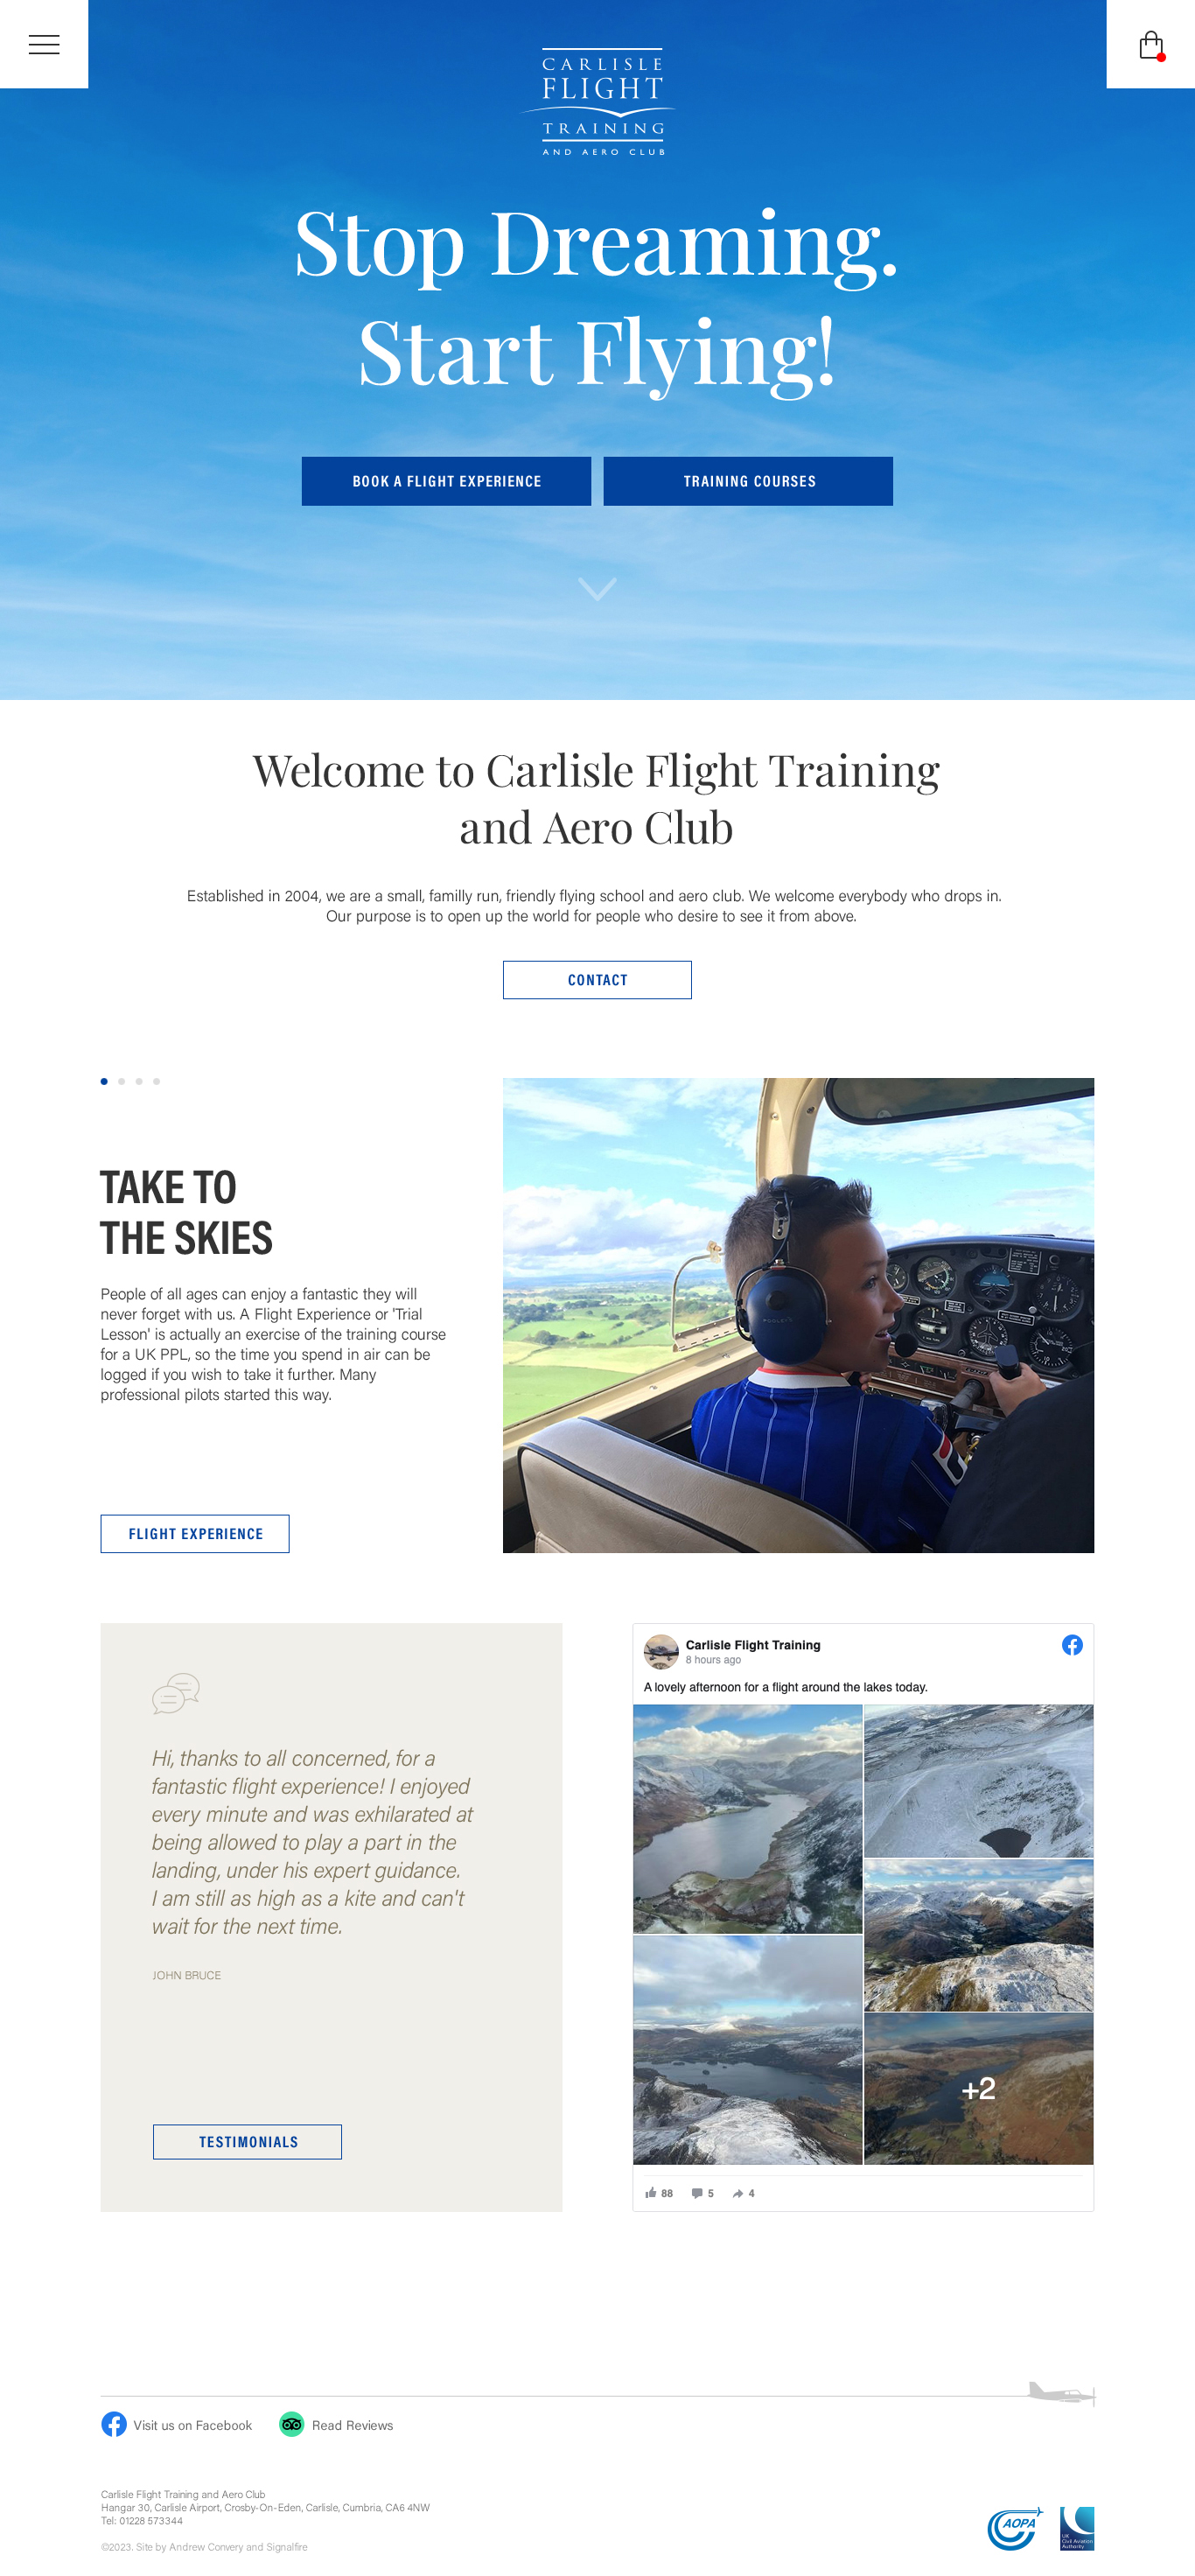 Carlisle Flight Training